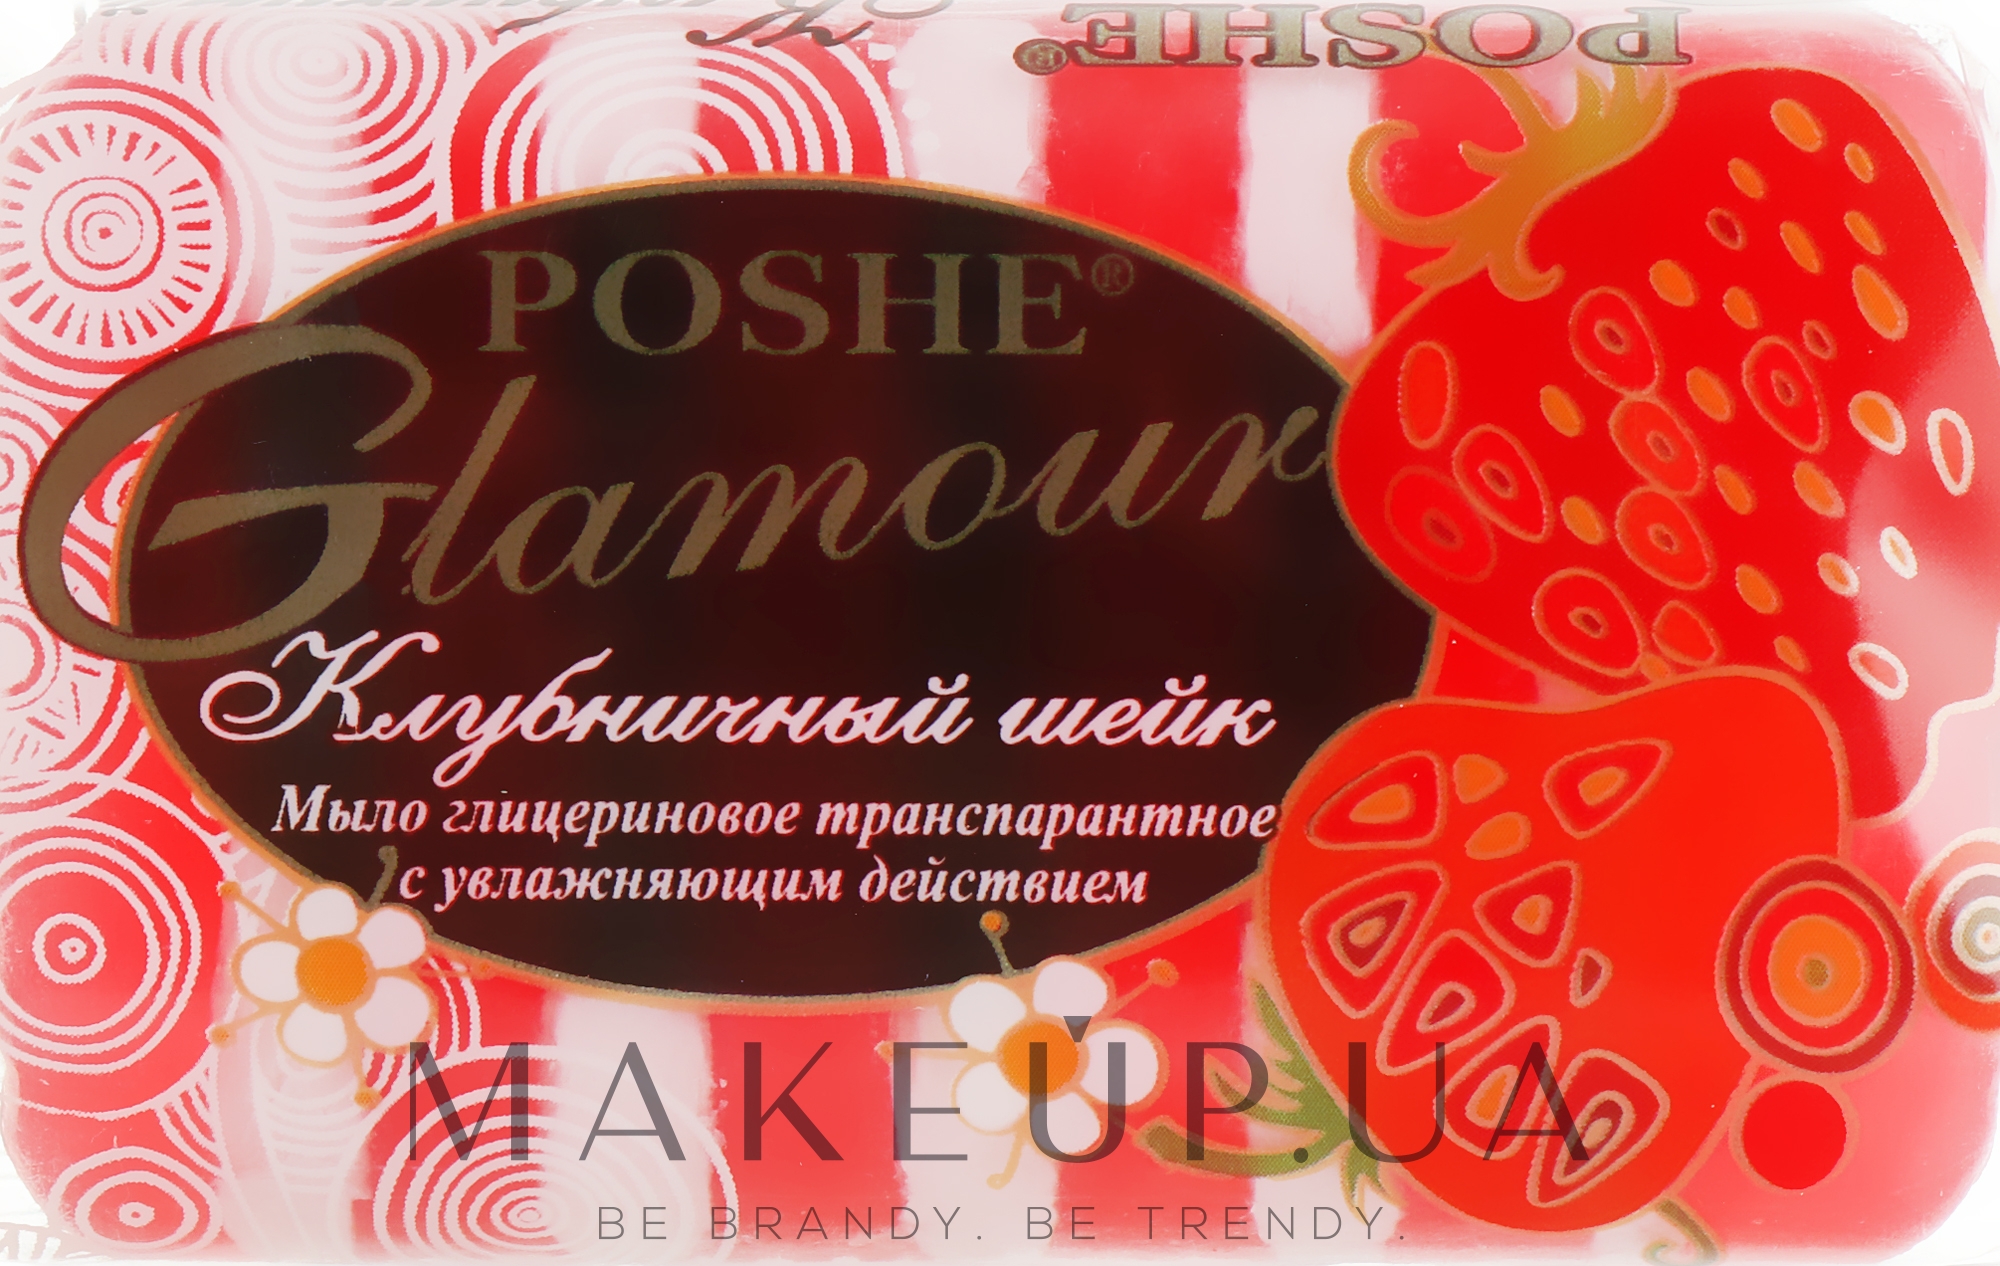 Глицериновое транспарантное мыло "Клубничный шейк" - Poshe Glamour — фото 70g